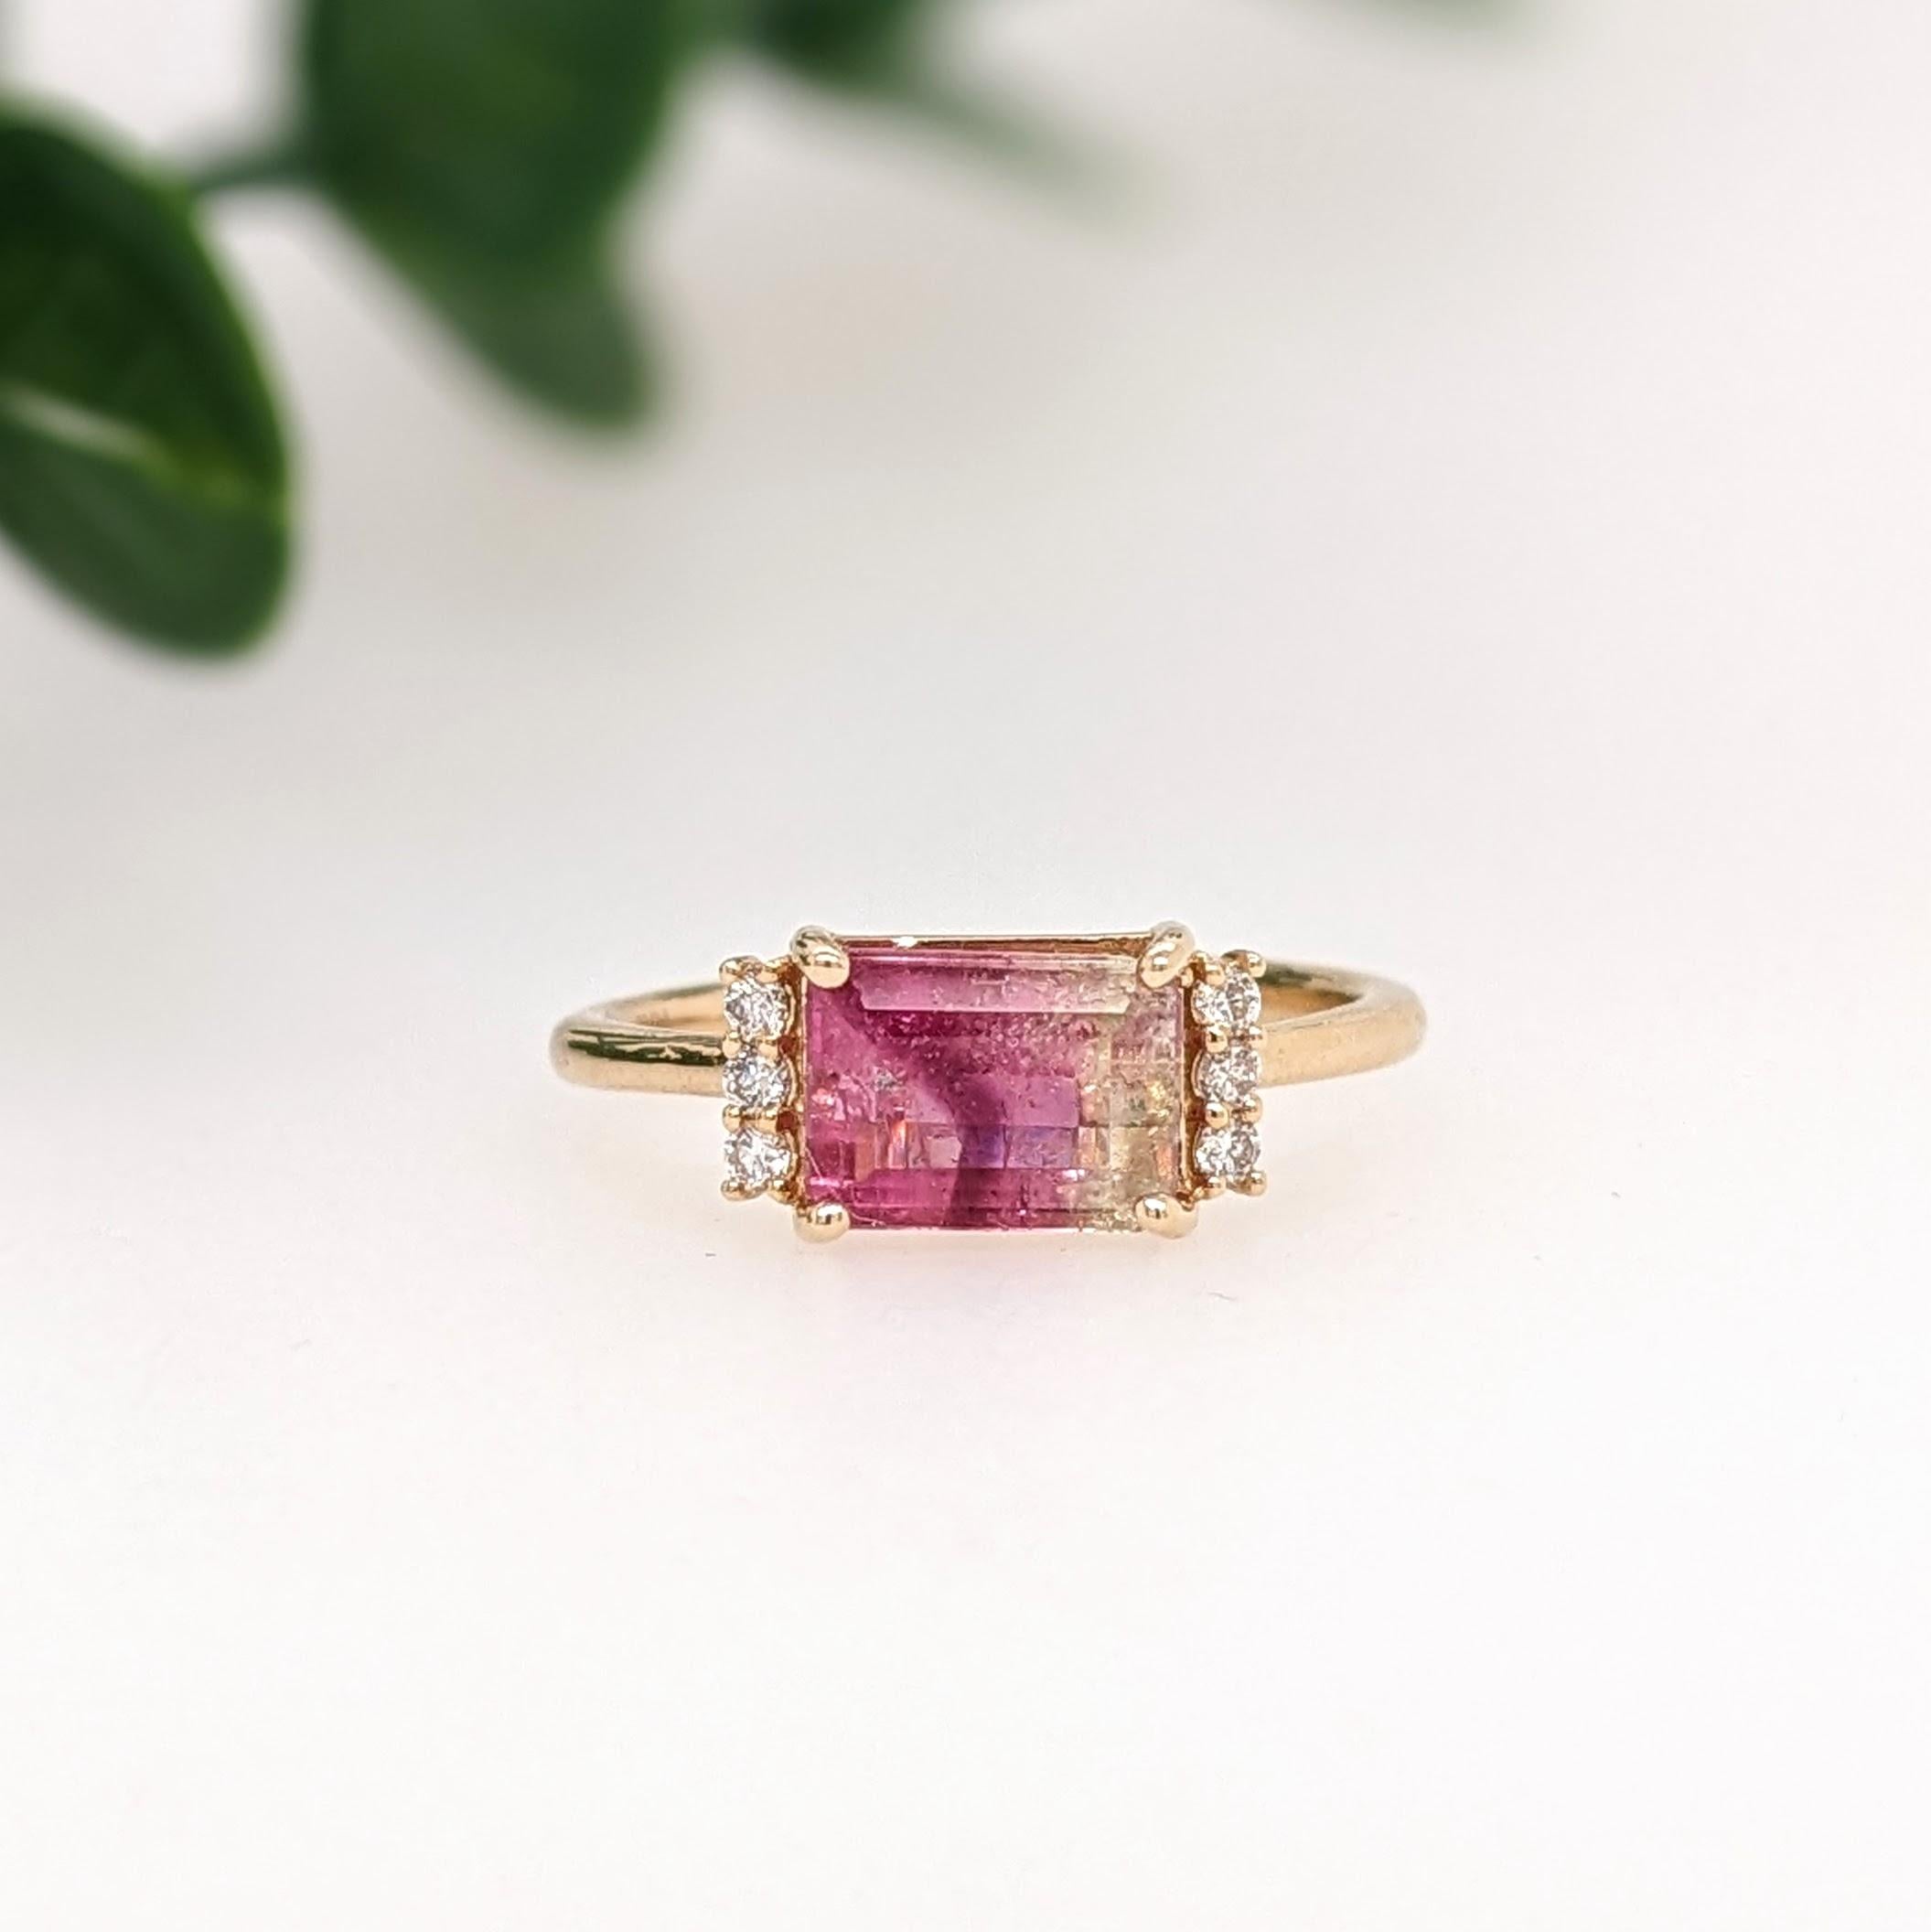 Dieser Ring zeigt einen schönen rosa und weißen zweifarbigen Turmalin in einer klassischen NNJ Designs Ringfassung mit funkelnden natürlichen Diamanten, die alle in 14k Gelbgold gefasst sind. Ein wunderschöner moderner Look, der eine perfekte